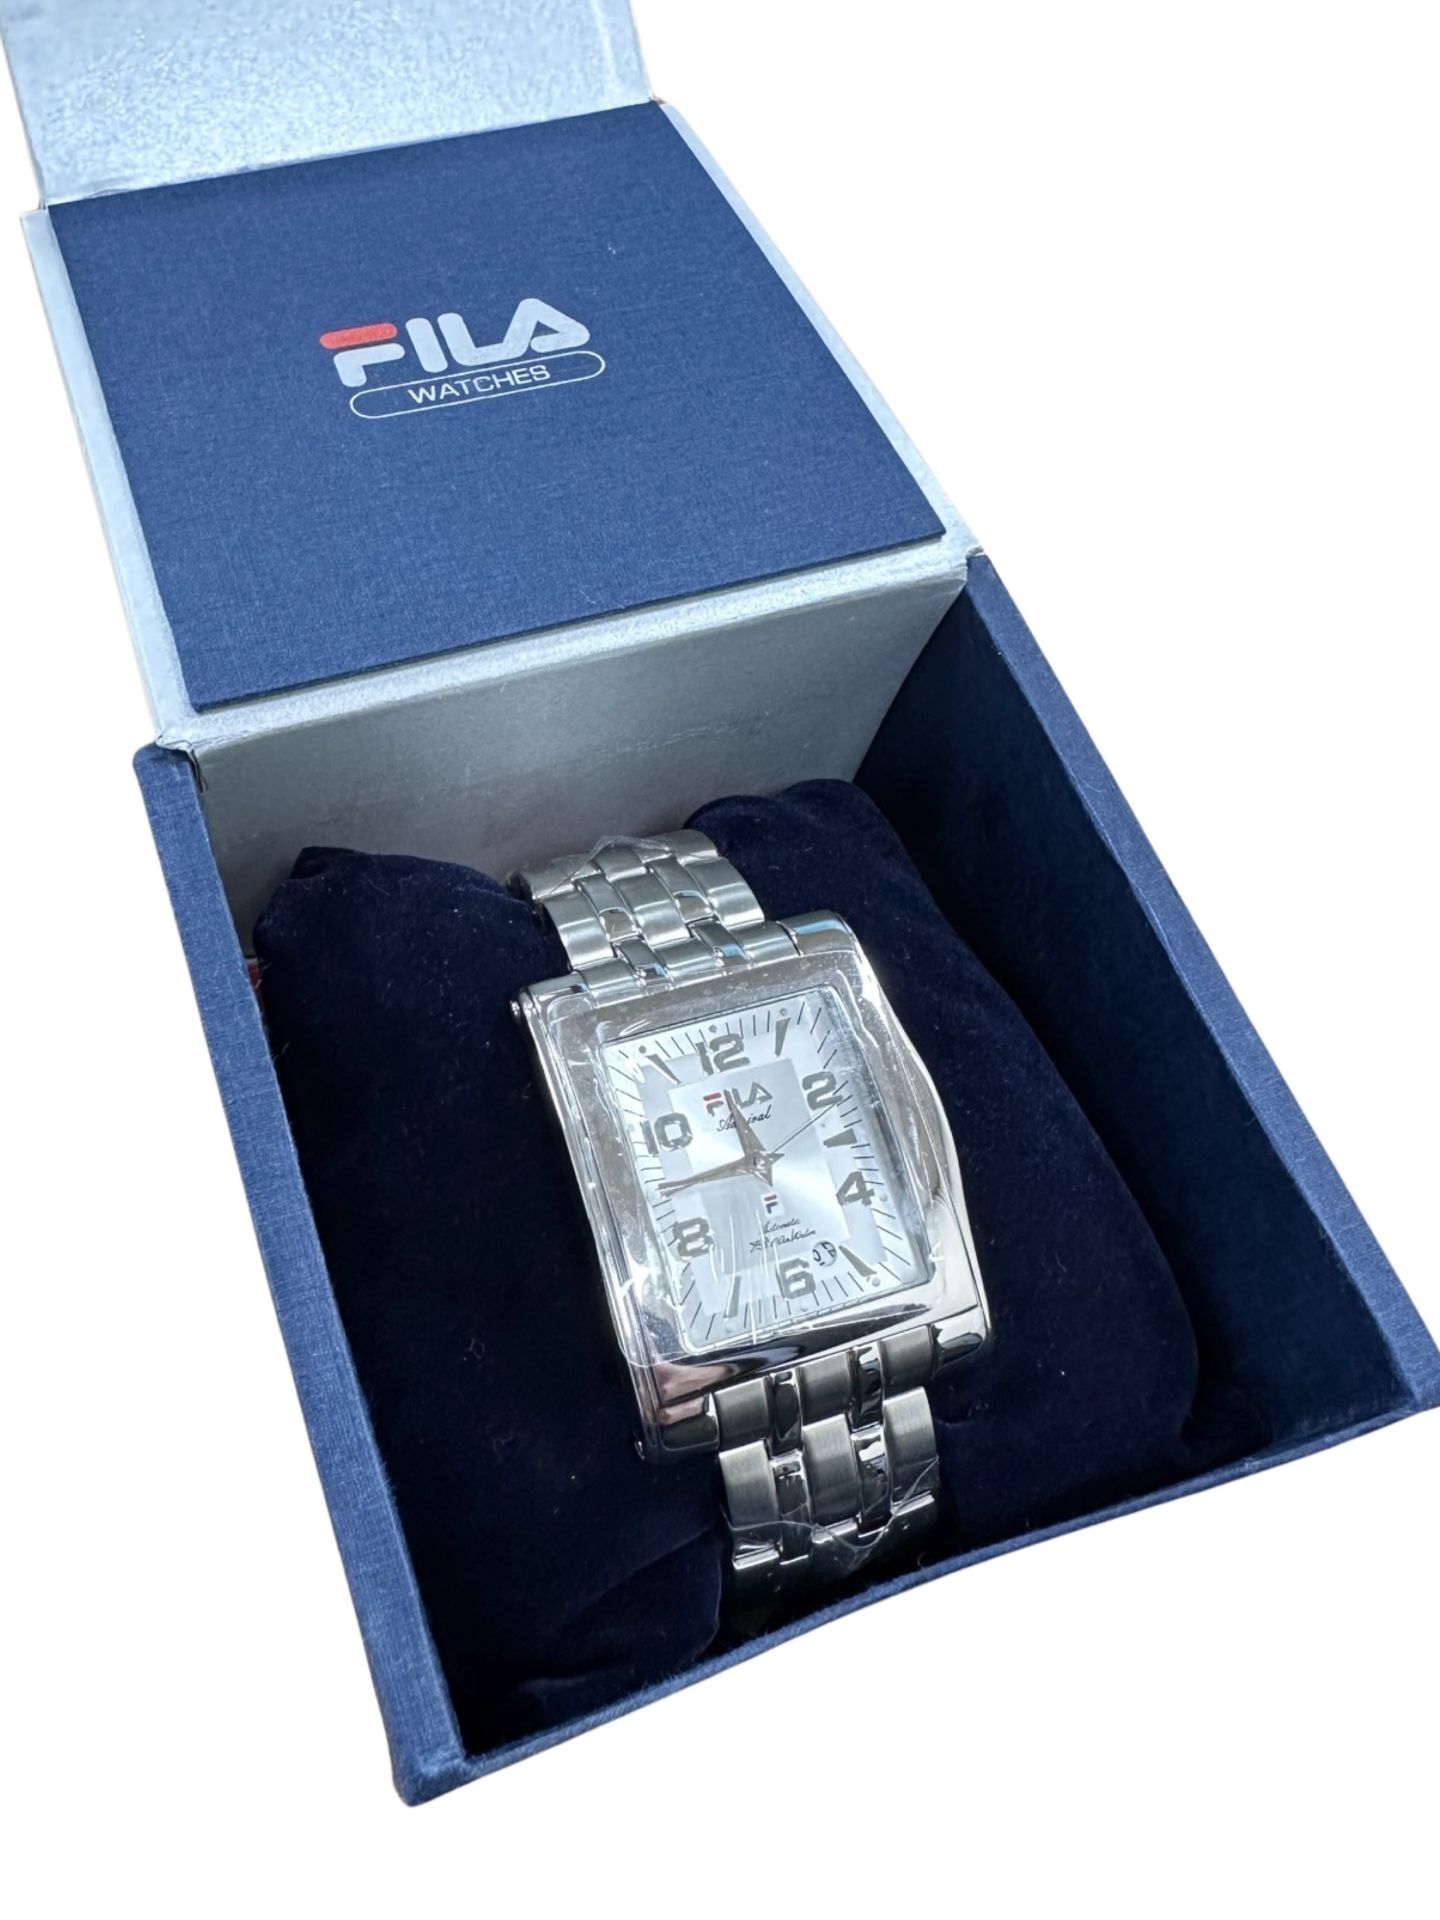 A gentlemen's Fila wristwatch, in retail box.